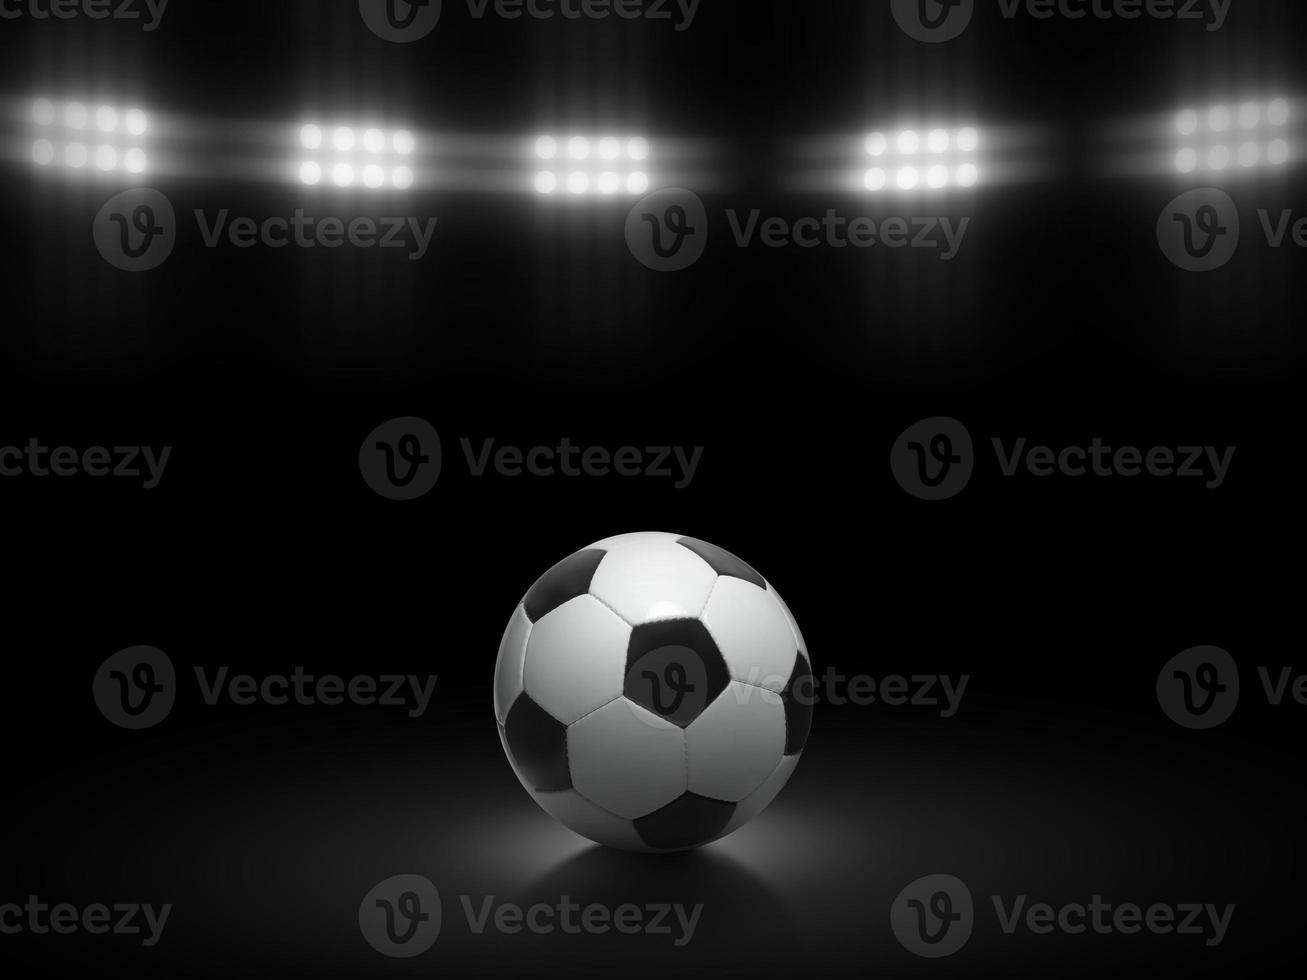 Fußball Ball auf ein schwarz Hintergrund unter Stadion Beleuchtung foto